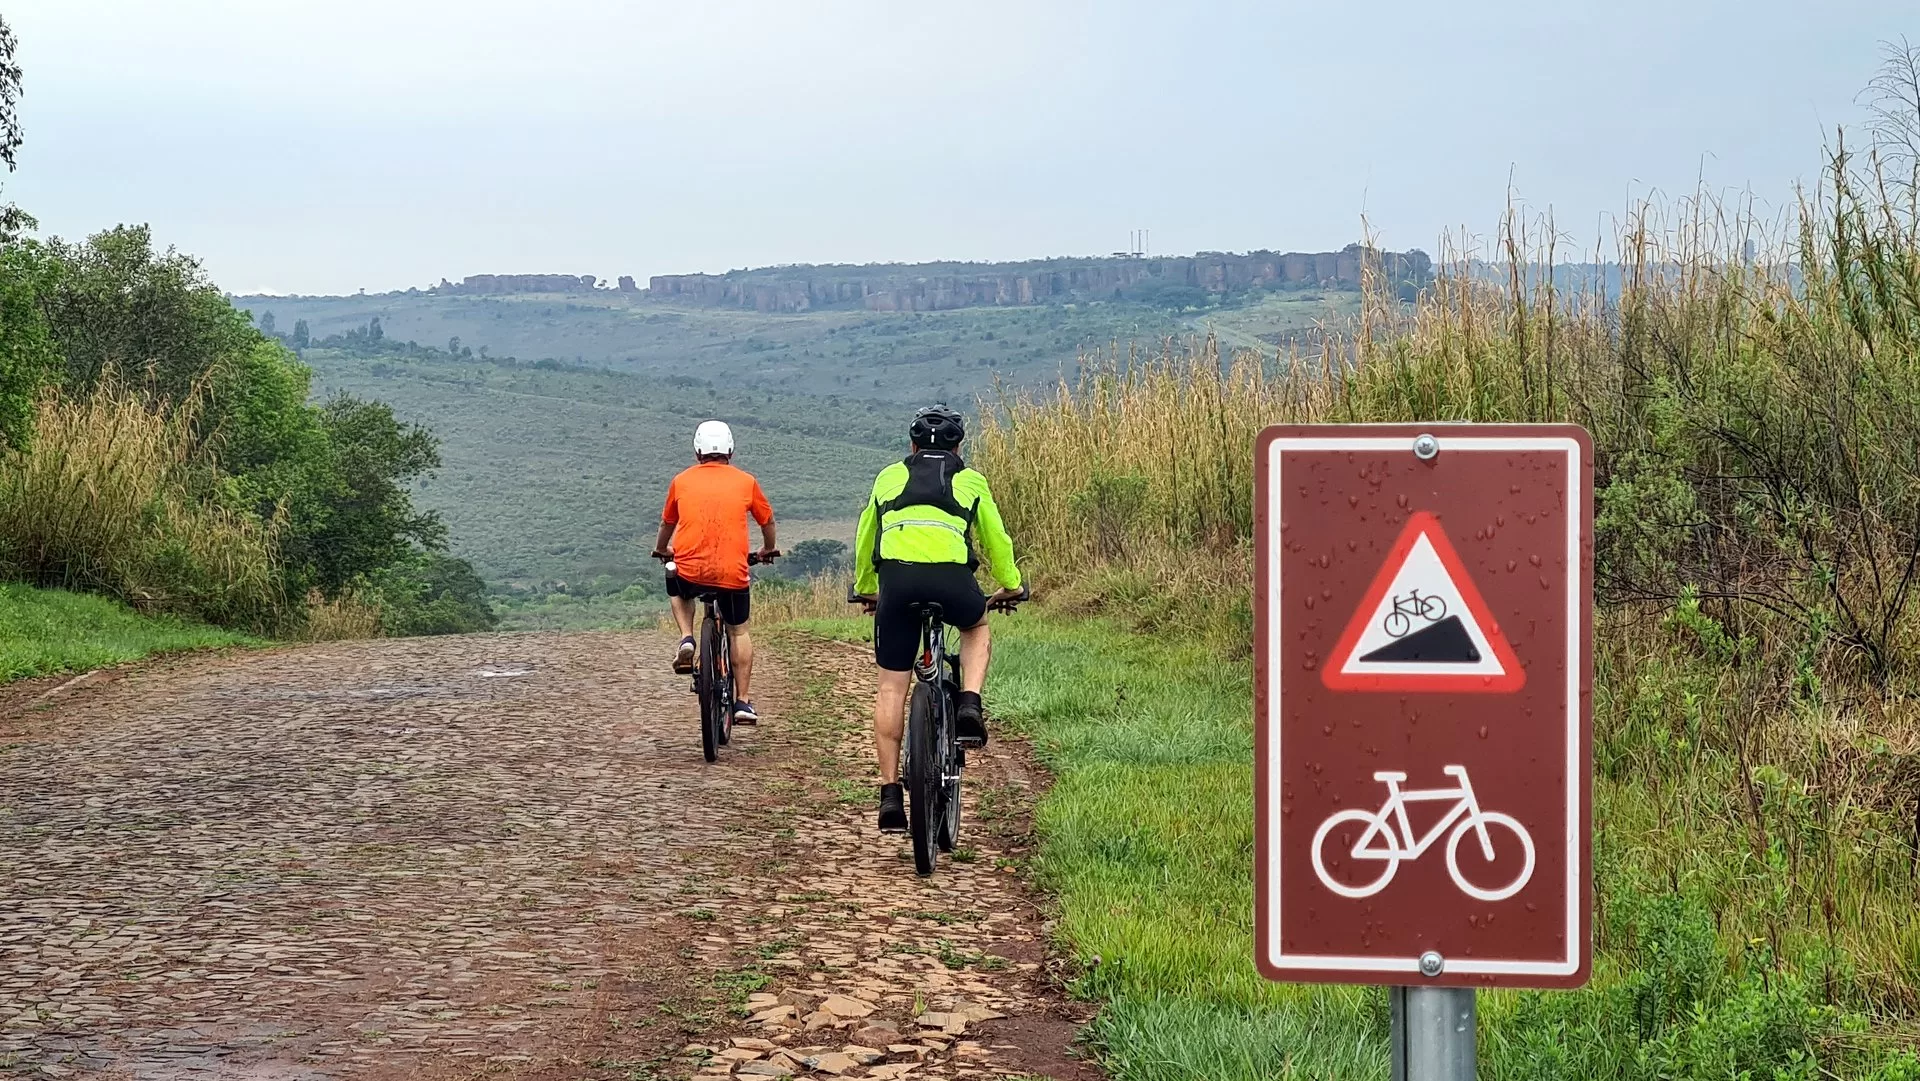 O ciclotur autoguiado no Parque Estadual Vila Velha é um exemplo inspirador de como criar rotas e circuitos de cicloturismo.